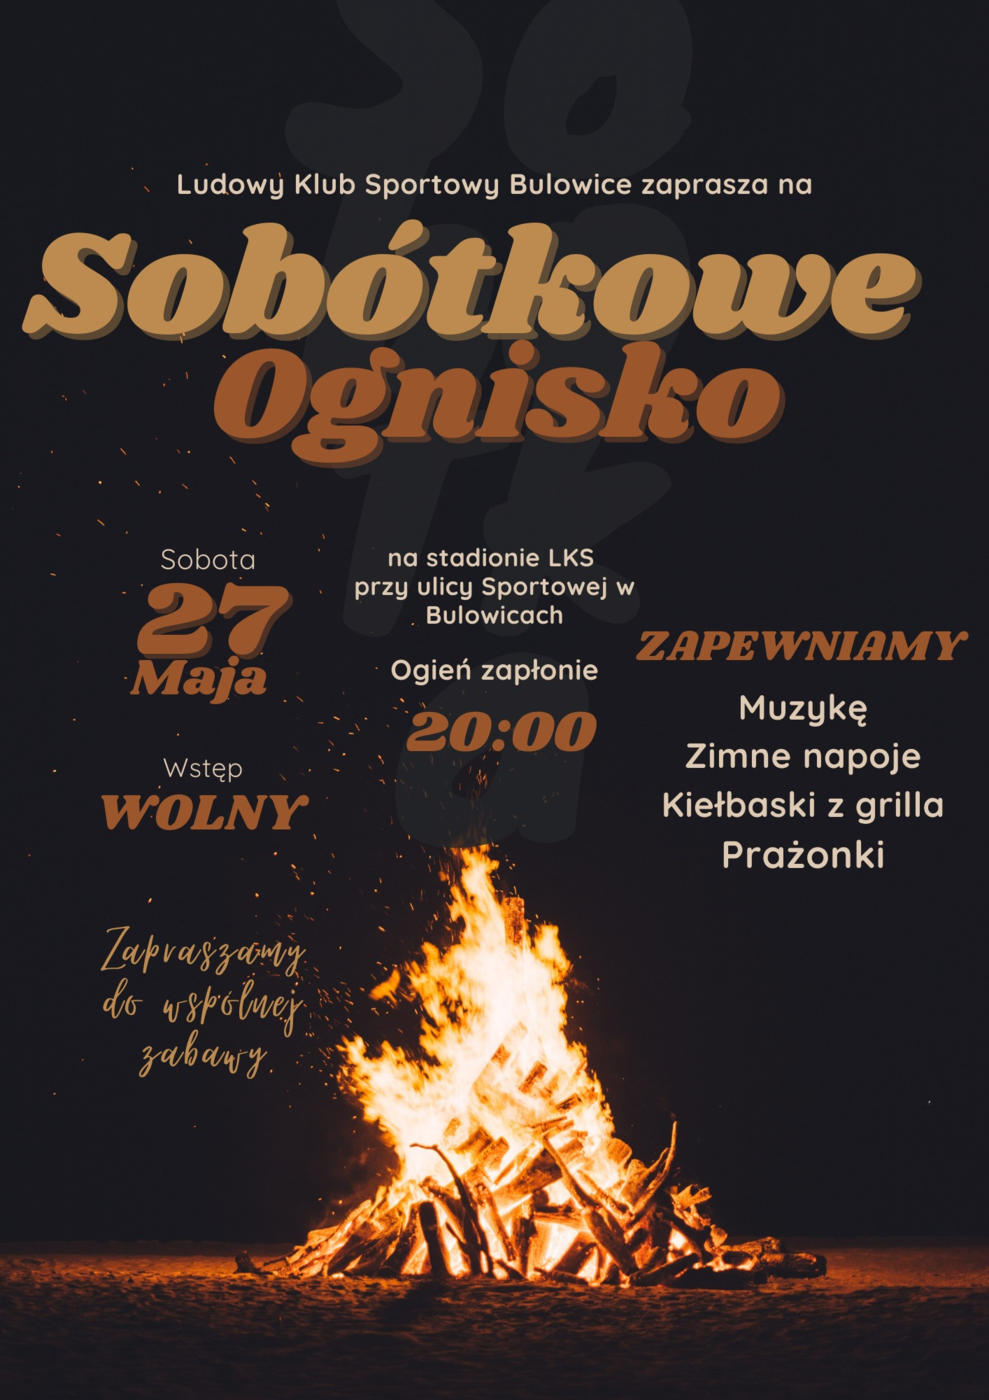 Członkowie Ludowego Klubu Sportowego w Bulowicach zapraszają na sobótkowe ognisko, które odbędzie się w sobotę 27 maja.